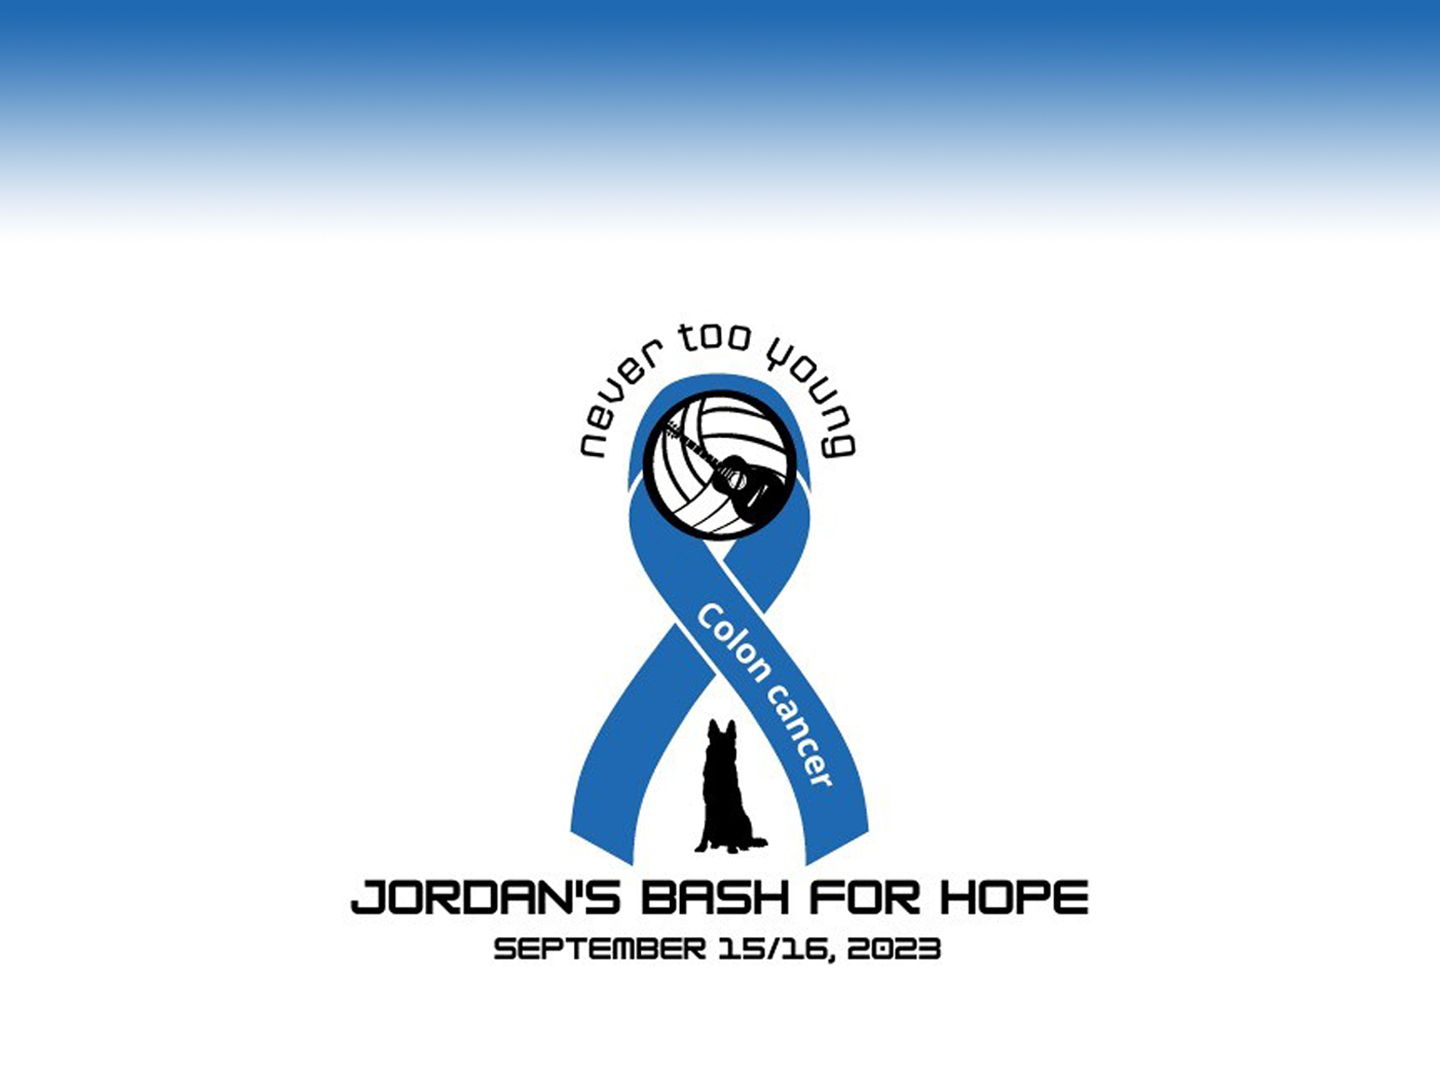 Jordan's Bash for Hope